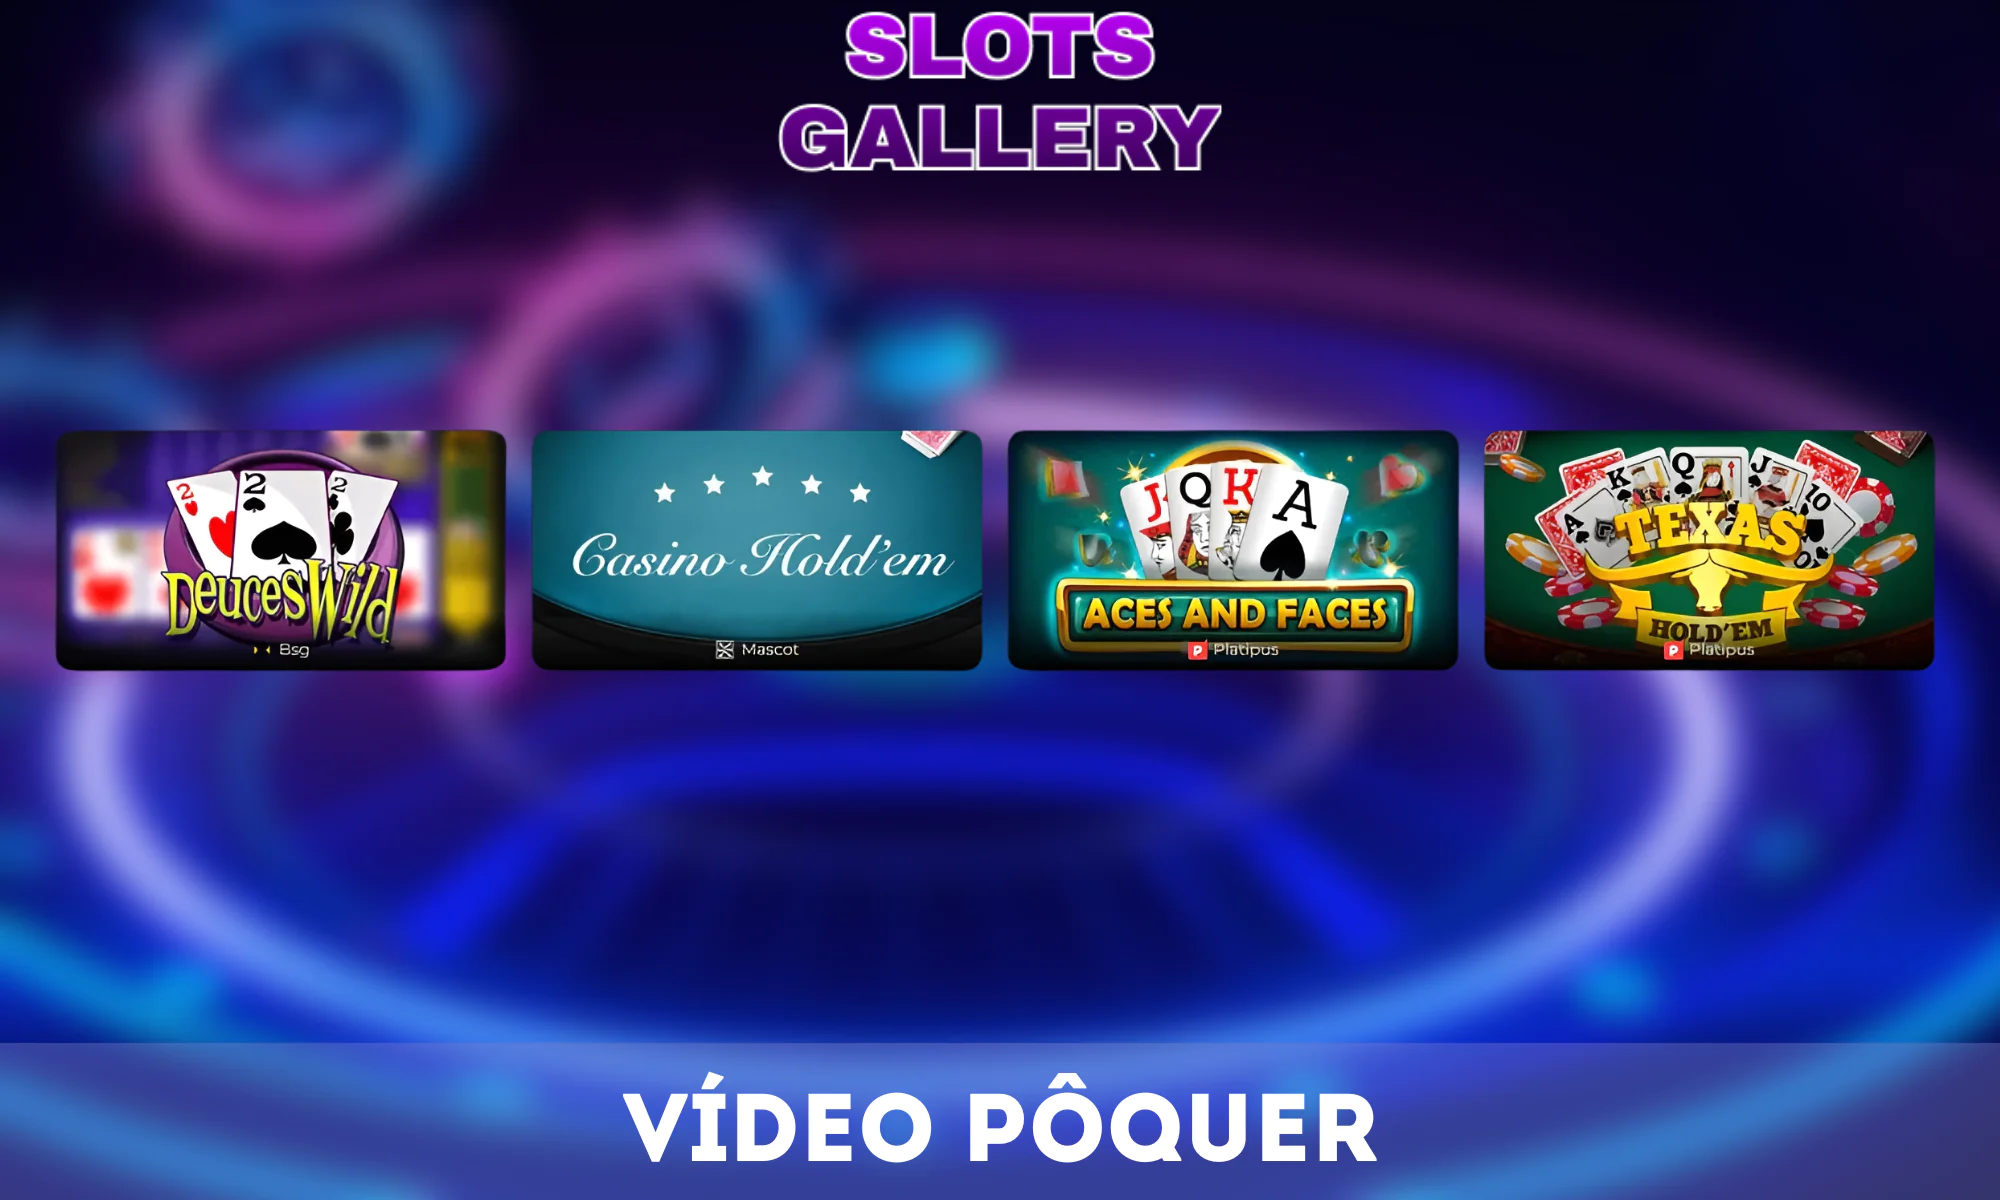 O vídeo pôquer é um jogo popular na Slots Gallery